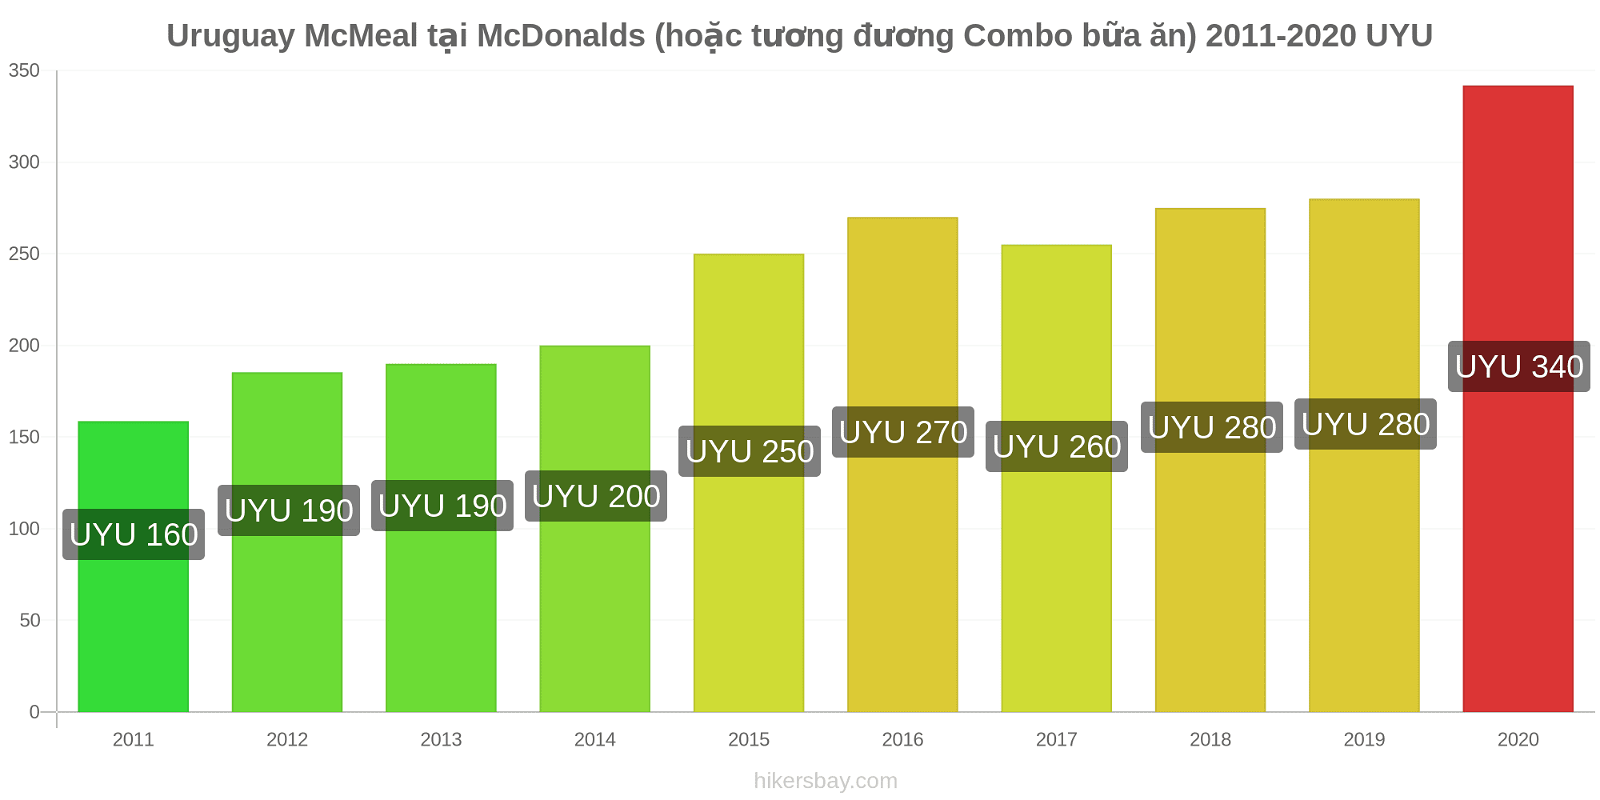 Uruguay thay đổi giá McMeal tại McDonalds (hoặc tương đương Combo bữa ăn) hikersbay.com